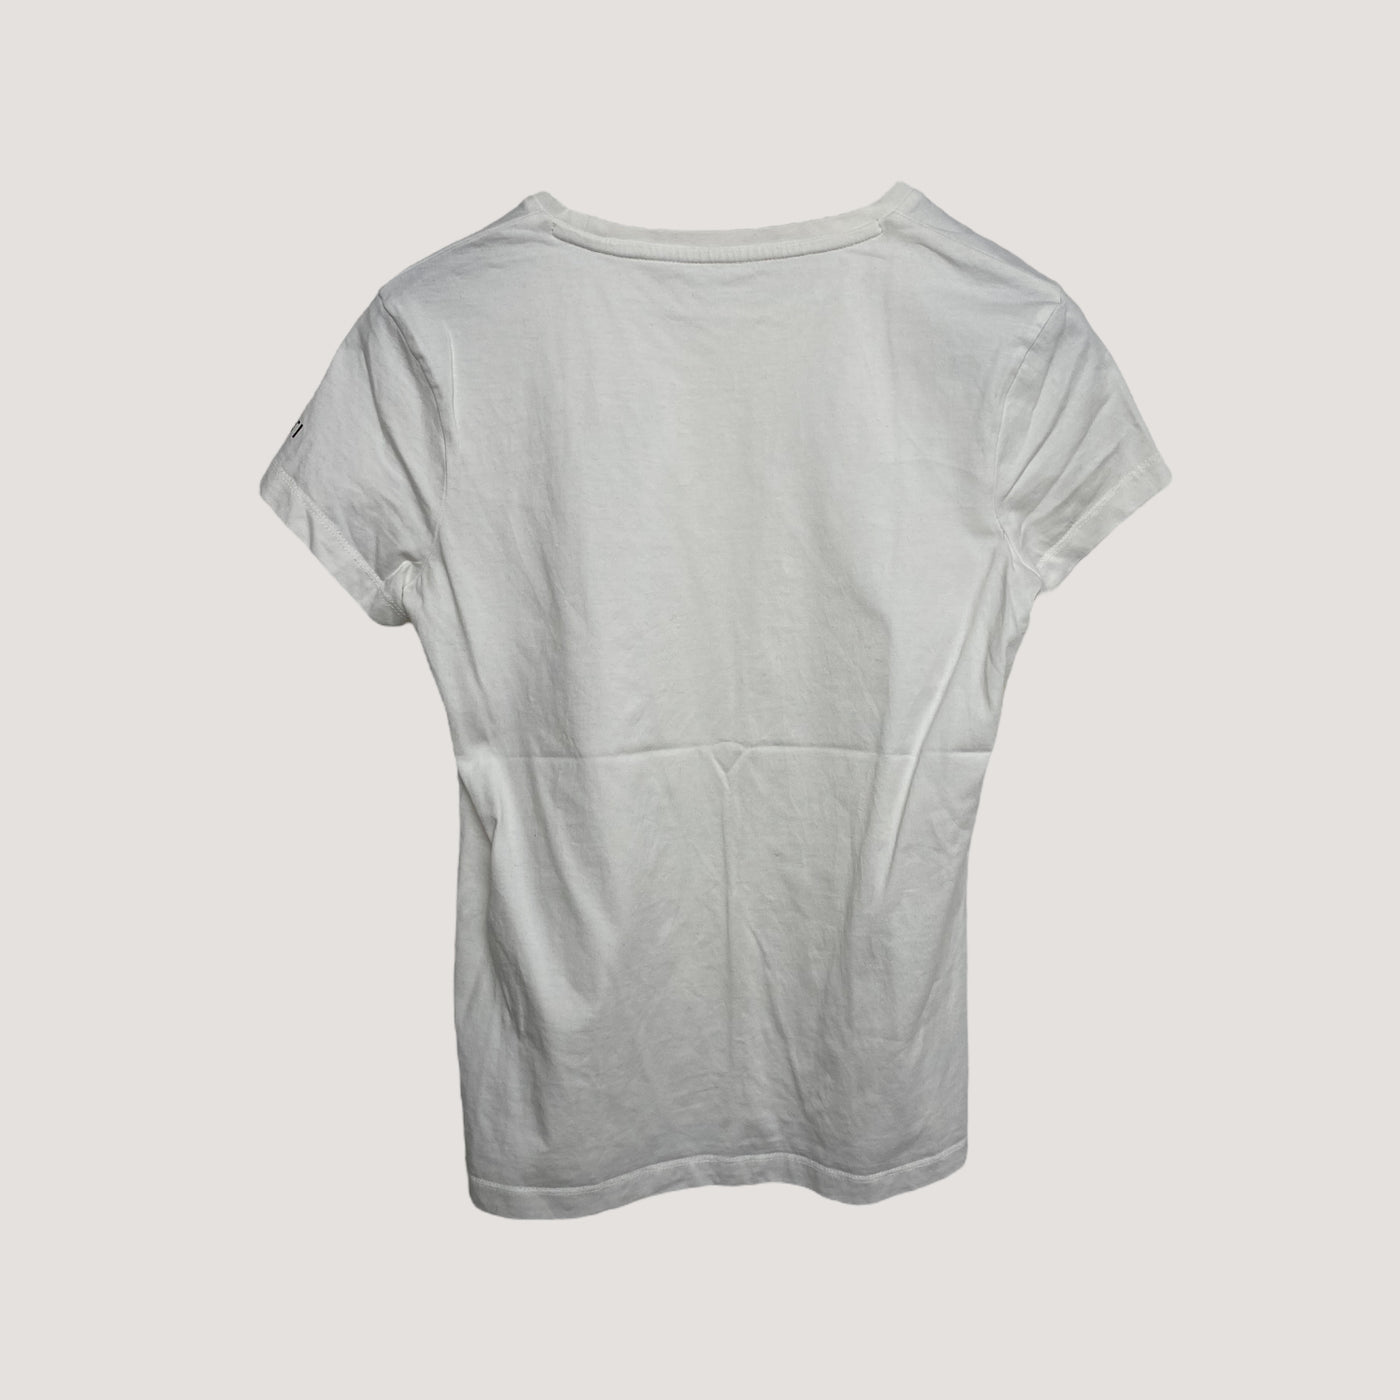 Halti t-shirt, white | woman M